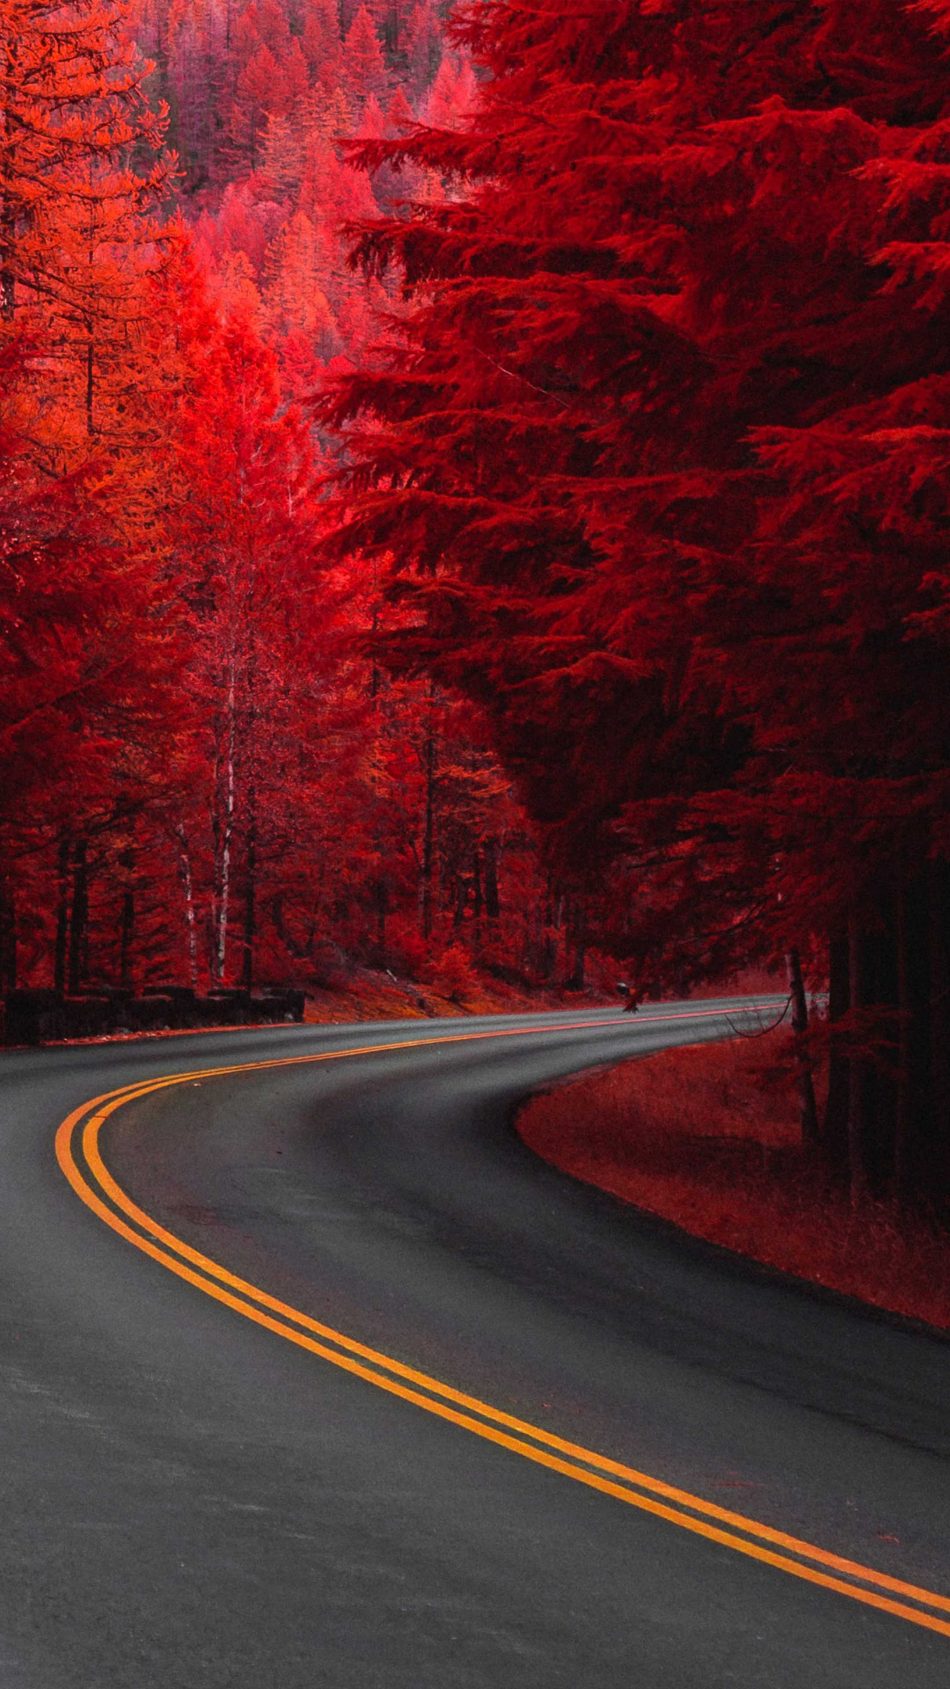 Cây thông đỏ đường khiến cho bối cảnh trở nên nổi bật hơn bao giờ hết. Hãy ngắm nhìn trong hình ảnh này ấy những cây thông đỏ rực rỡ và cảm nhận cảm giác yên bình và thư giãn trong bạn.